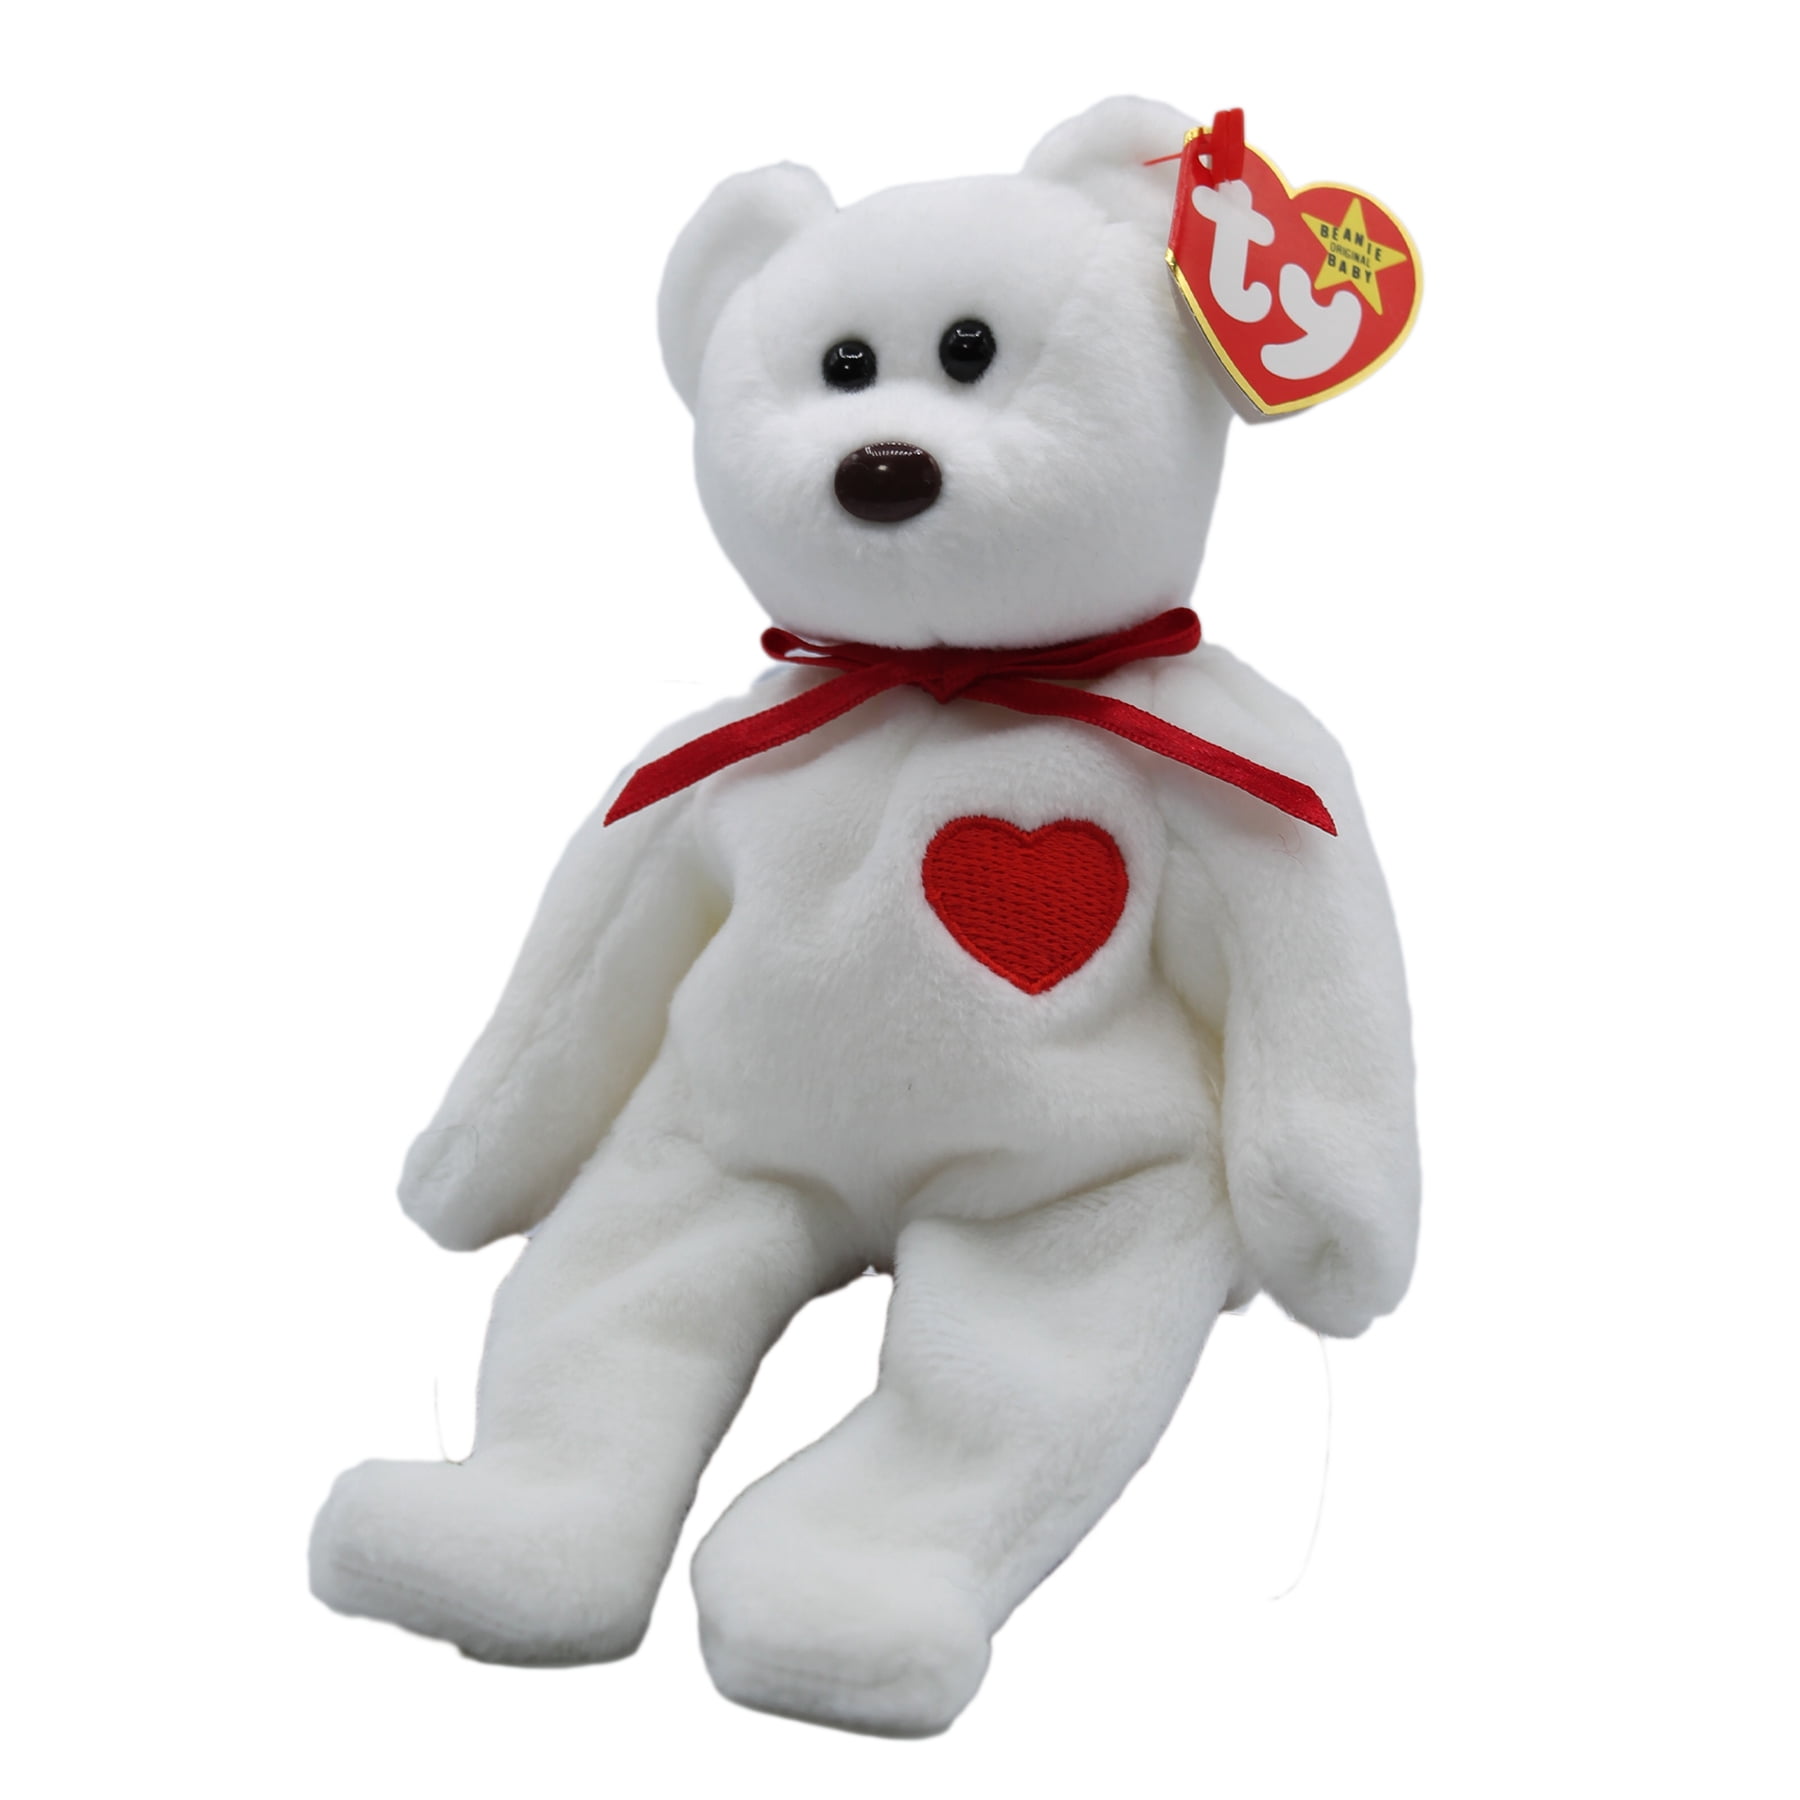 Ty Beanie Baby: Bear | Stuffed Animal | MWMT - Walmart.com